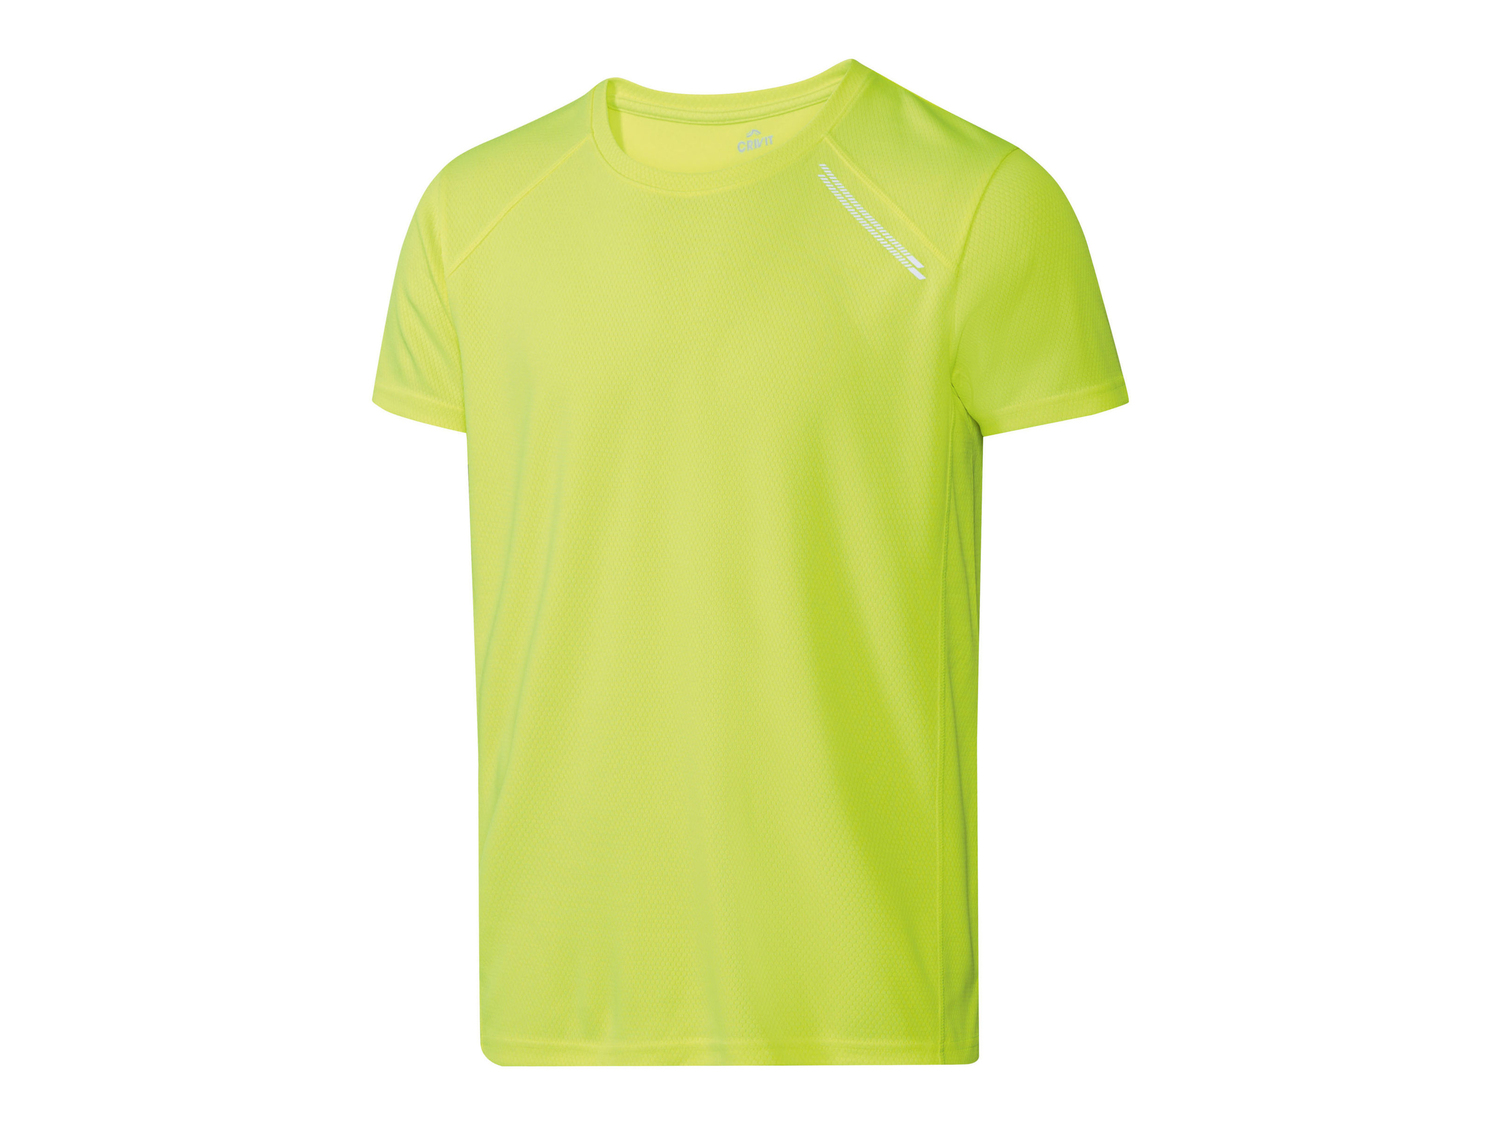 T-shirt sportiva da uomo Crivit, prezzo 4.99 &#8364; 
Misure: S-XL 
- Con dettagli ...